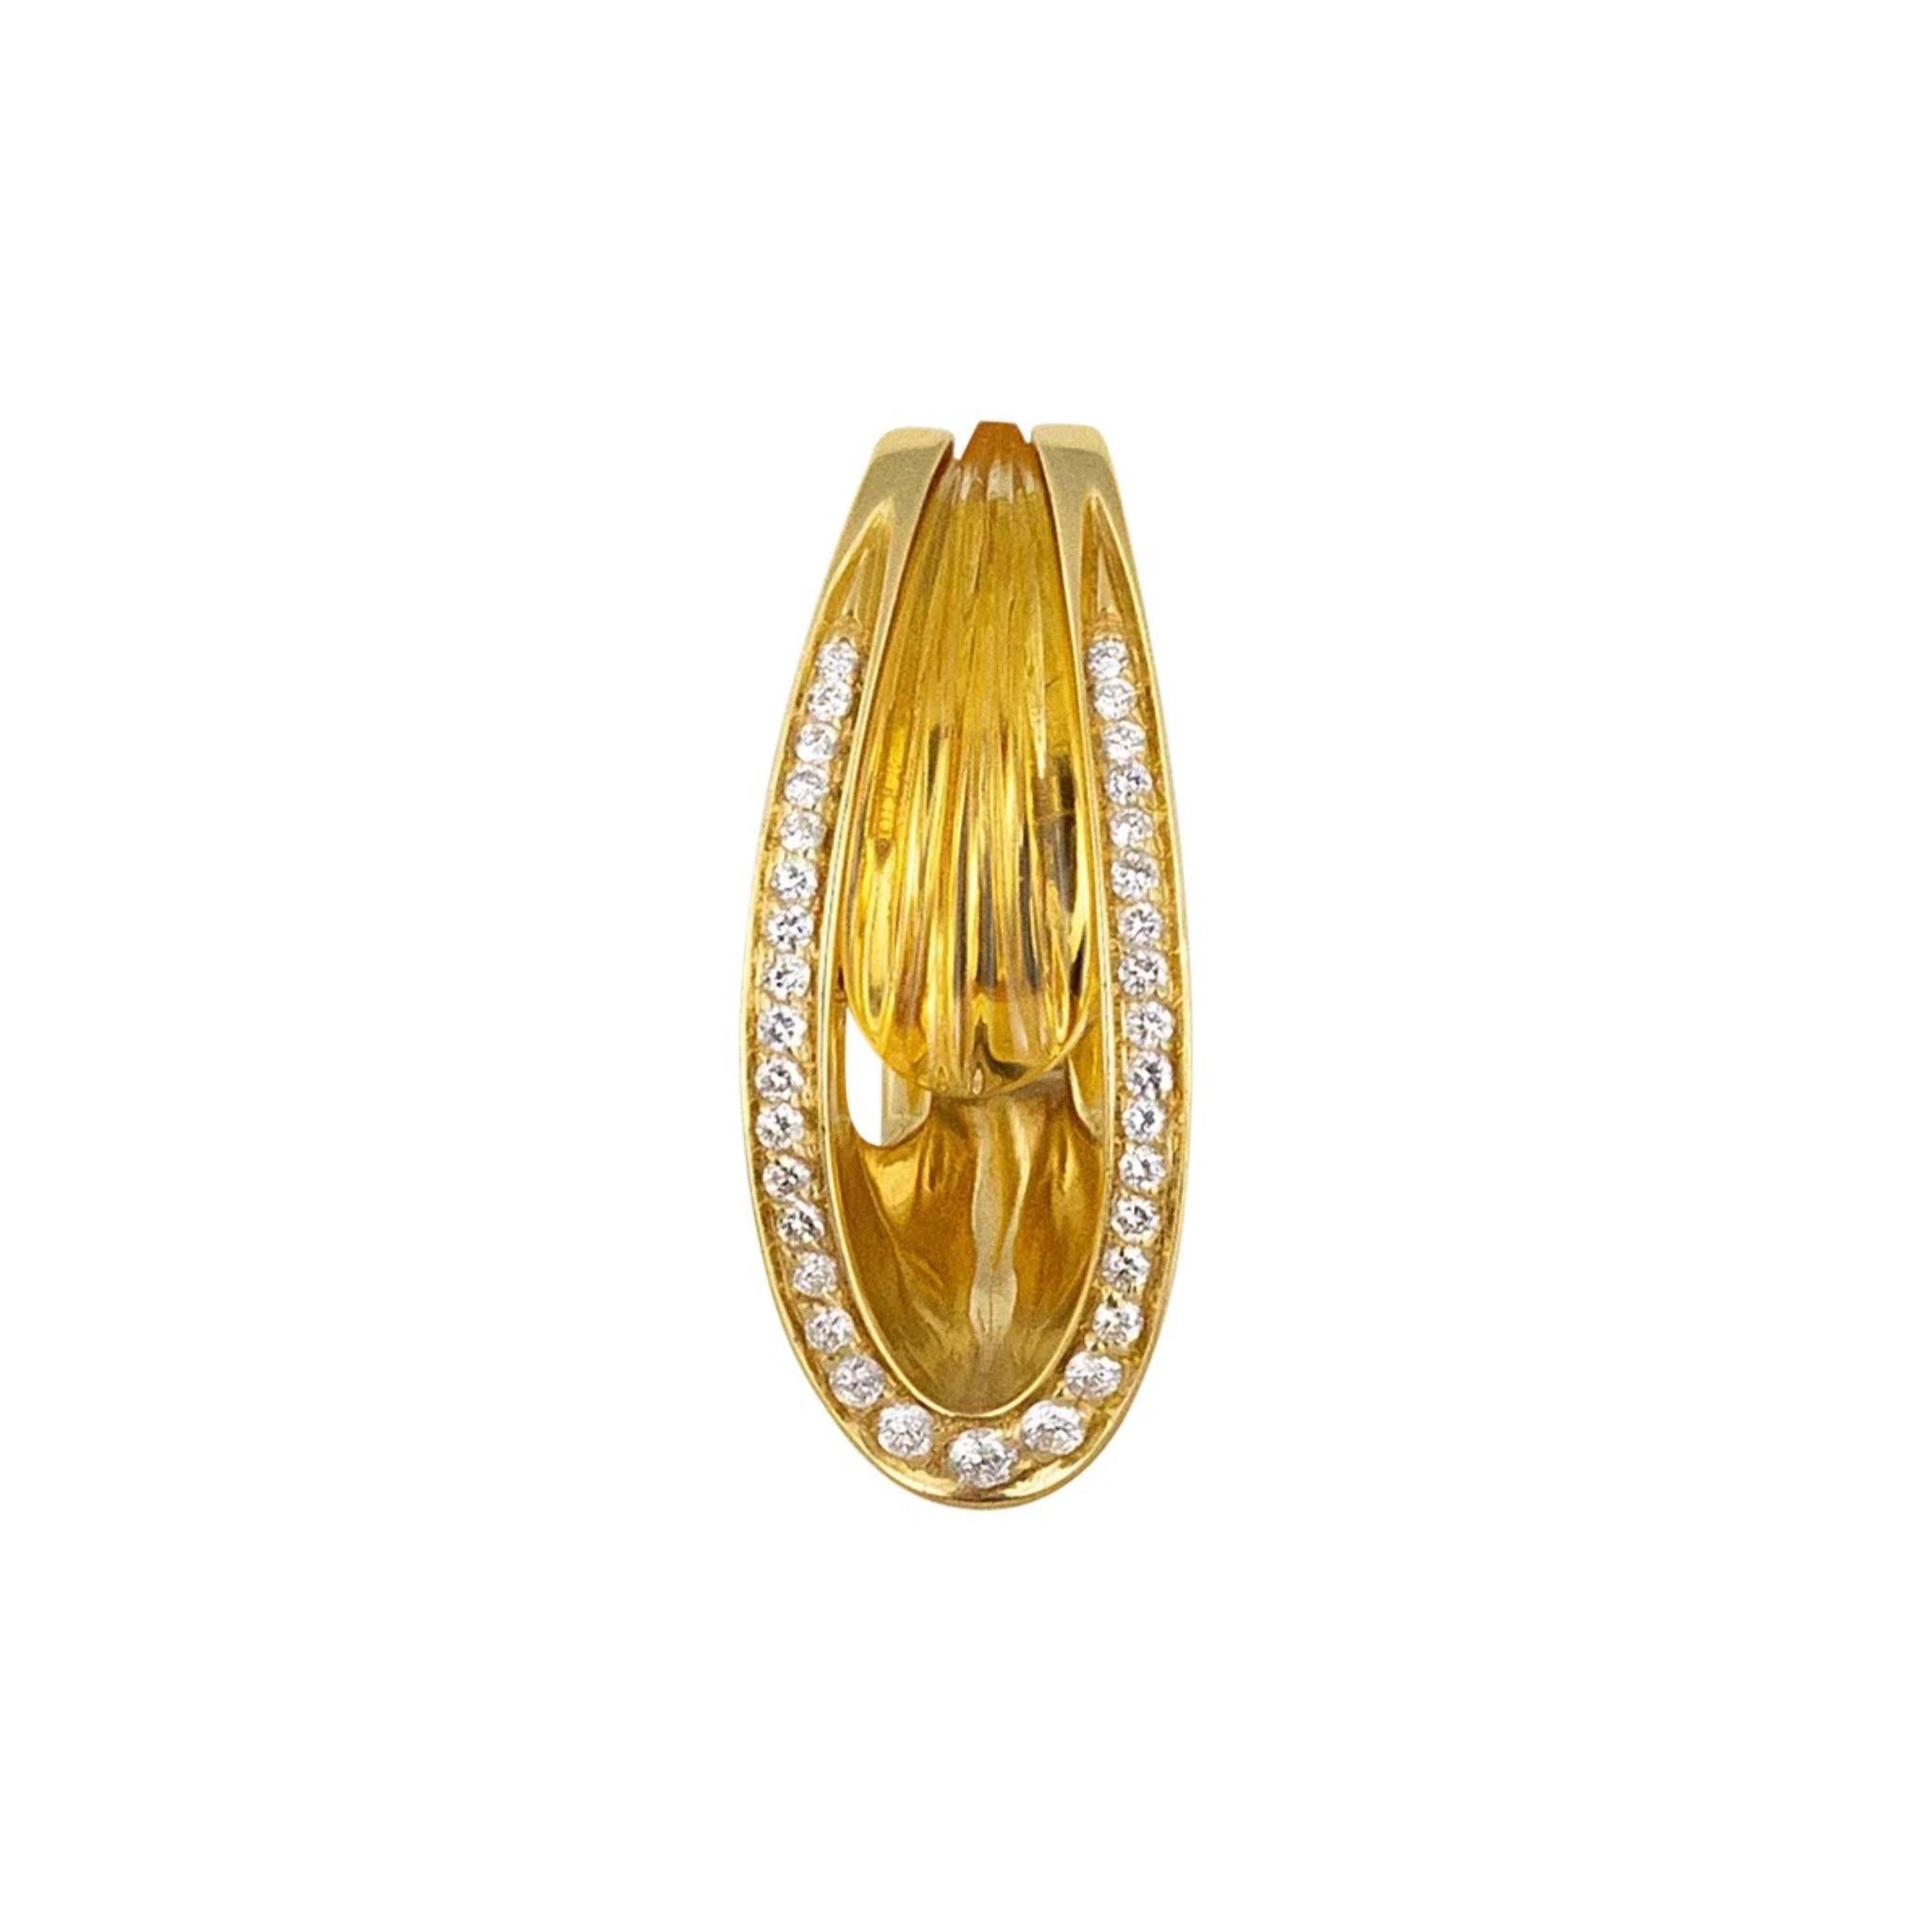 IO SI 18K Yellow Gold Diamond & Citrine Earrings
Diamond: 0.44ctw
Citrine: 1.10ctw
SKU: BLU01901
Retail price: $11,495.00